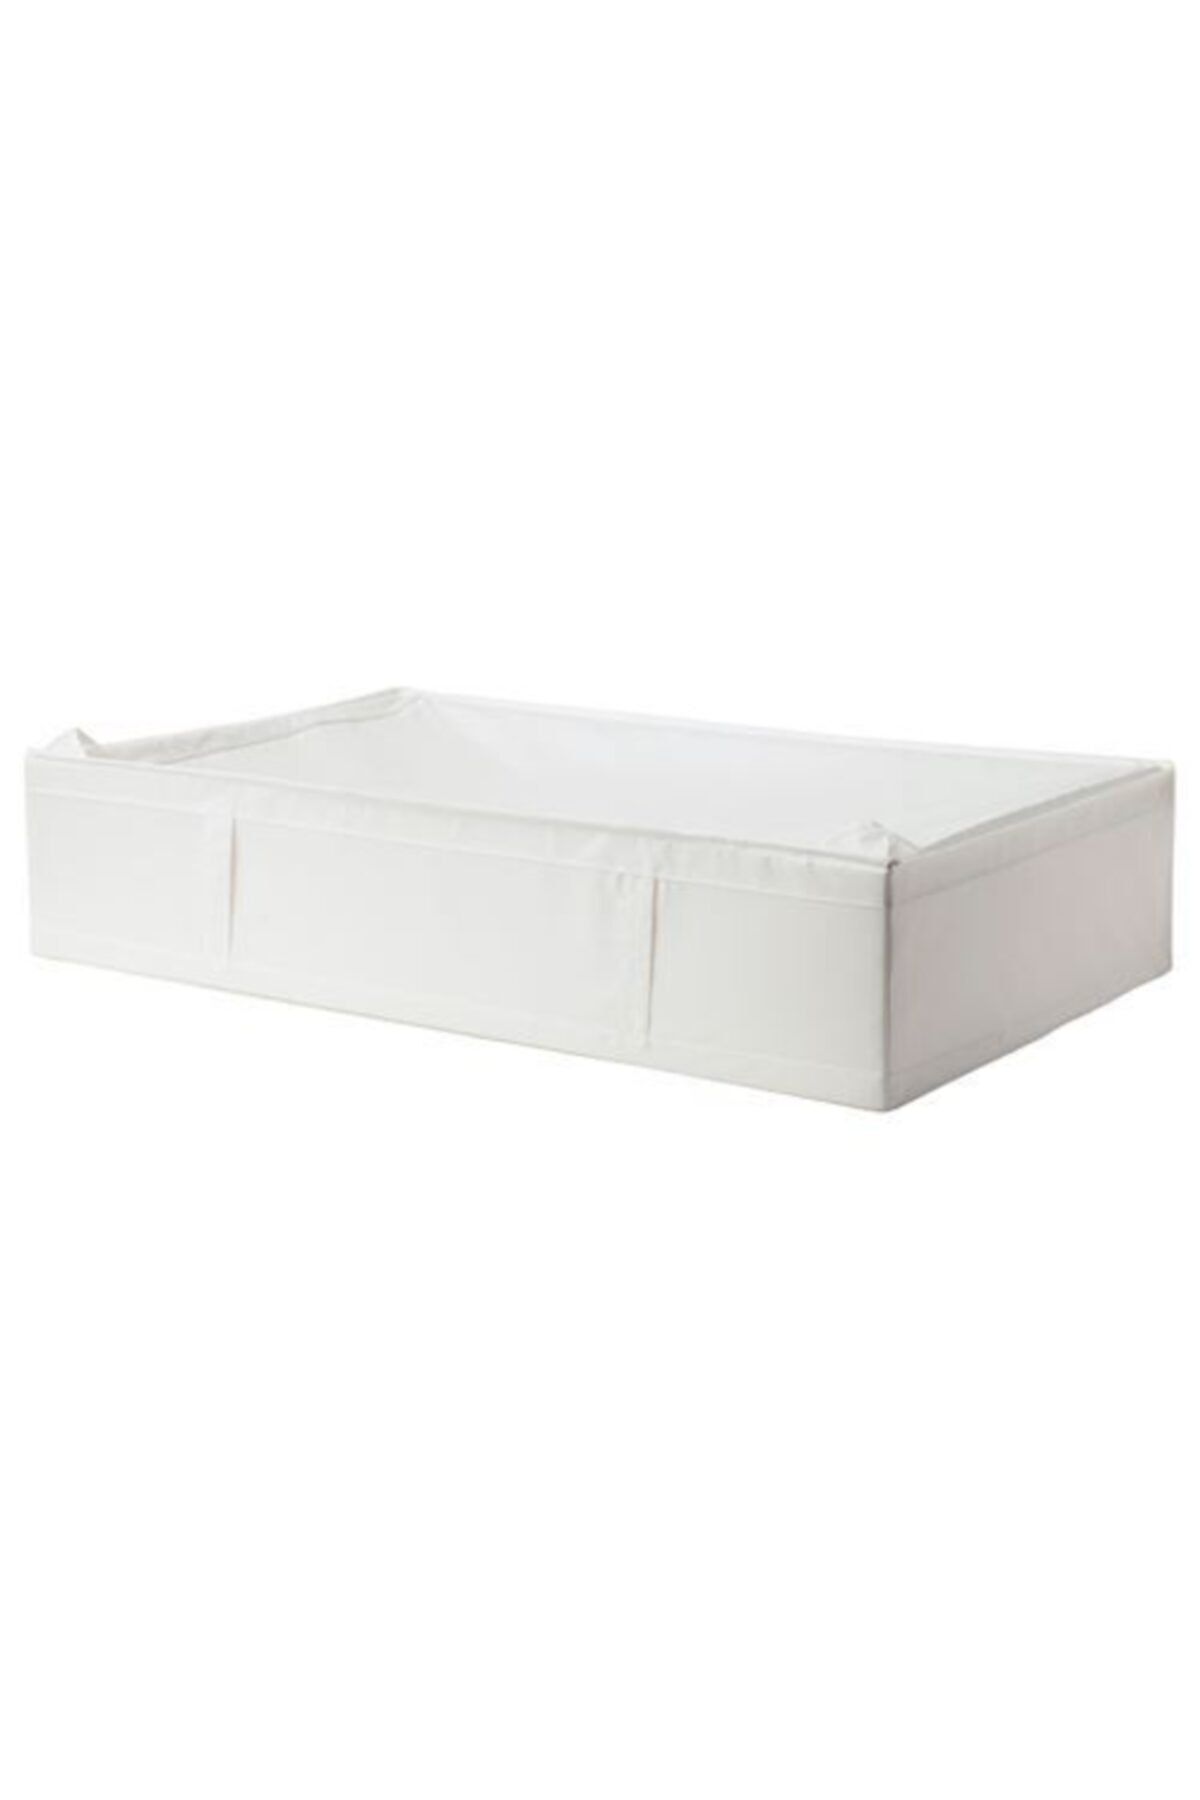 IKEA Skubb 93x55x19 Cm Saklama Düzenleme Kutusu Beyaz - Kutu Hurç